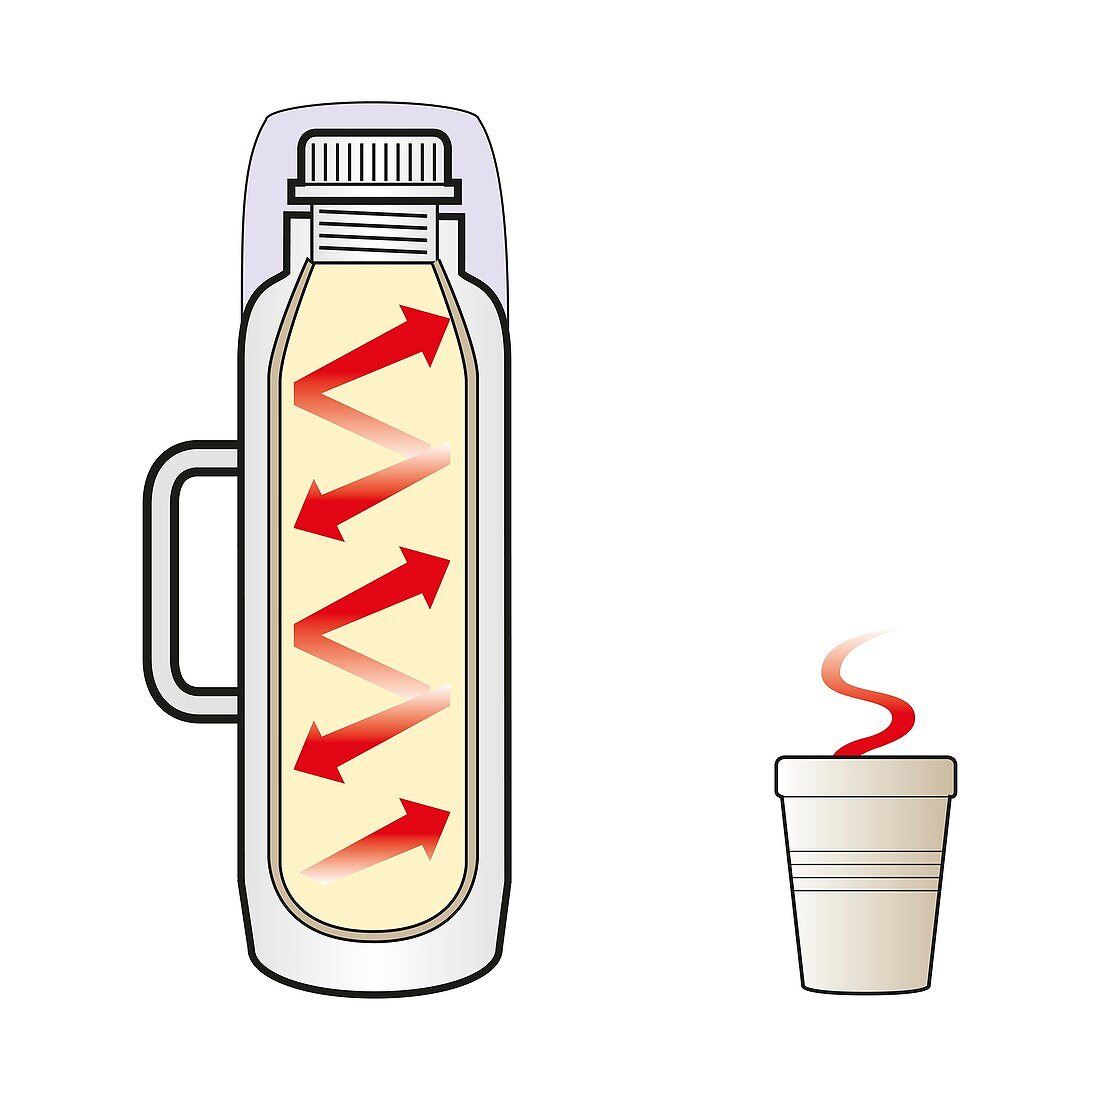 Vacuum flask, illustration